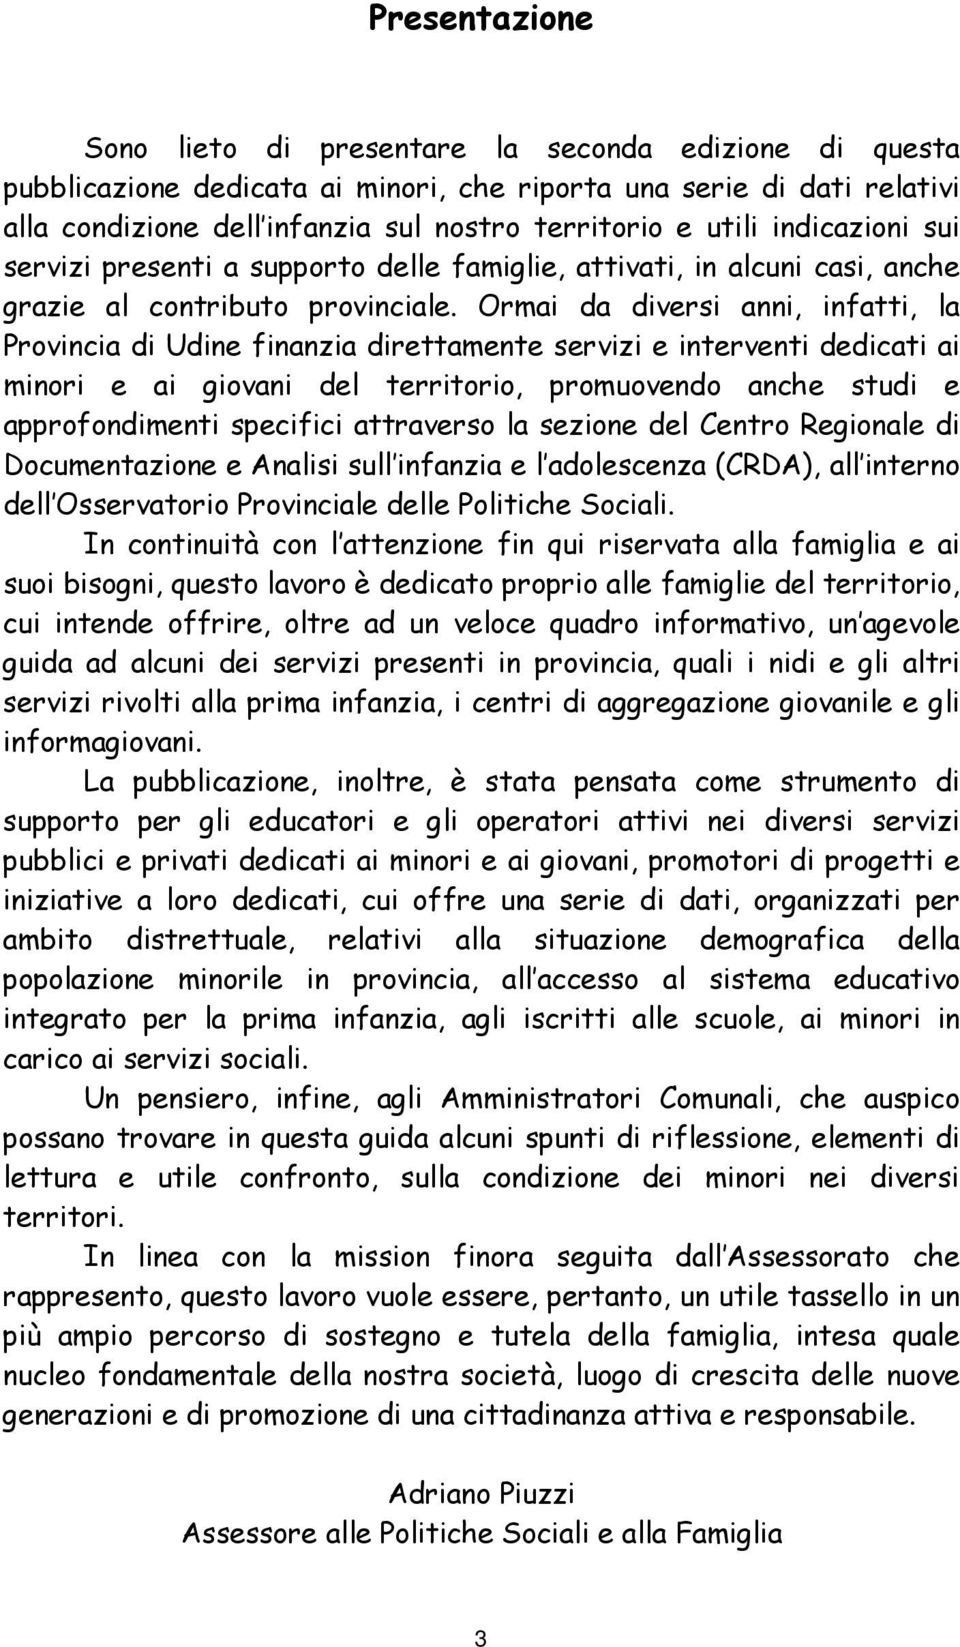 Ormai da diversi anni, infatti, la Provincia di Udine finanzia direttamente servizi e interventi dedicati ai minori e ai giovani del territorio, promuovendo anche studi e approfondimenti specifici